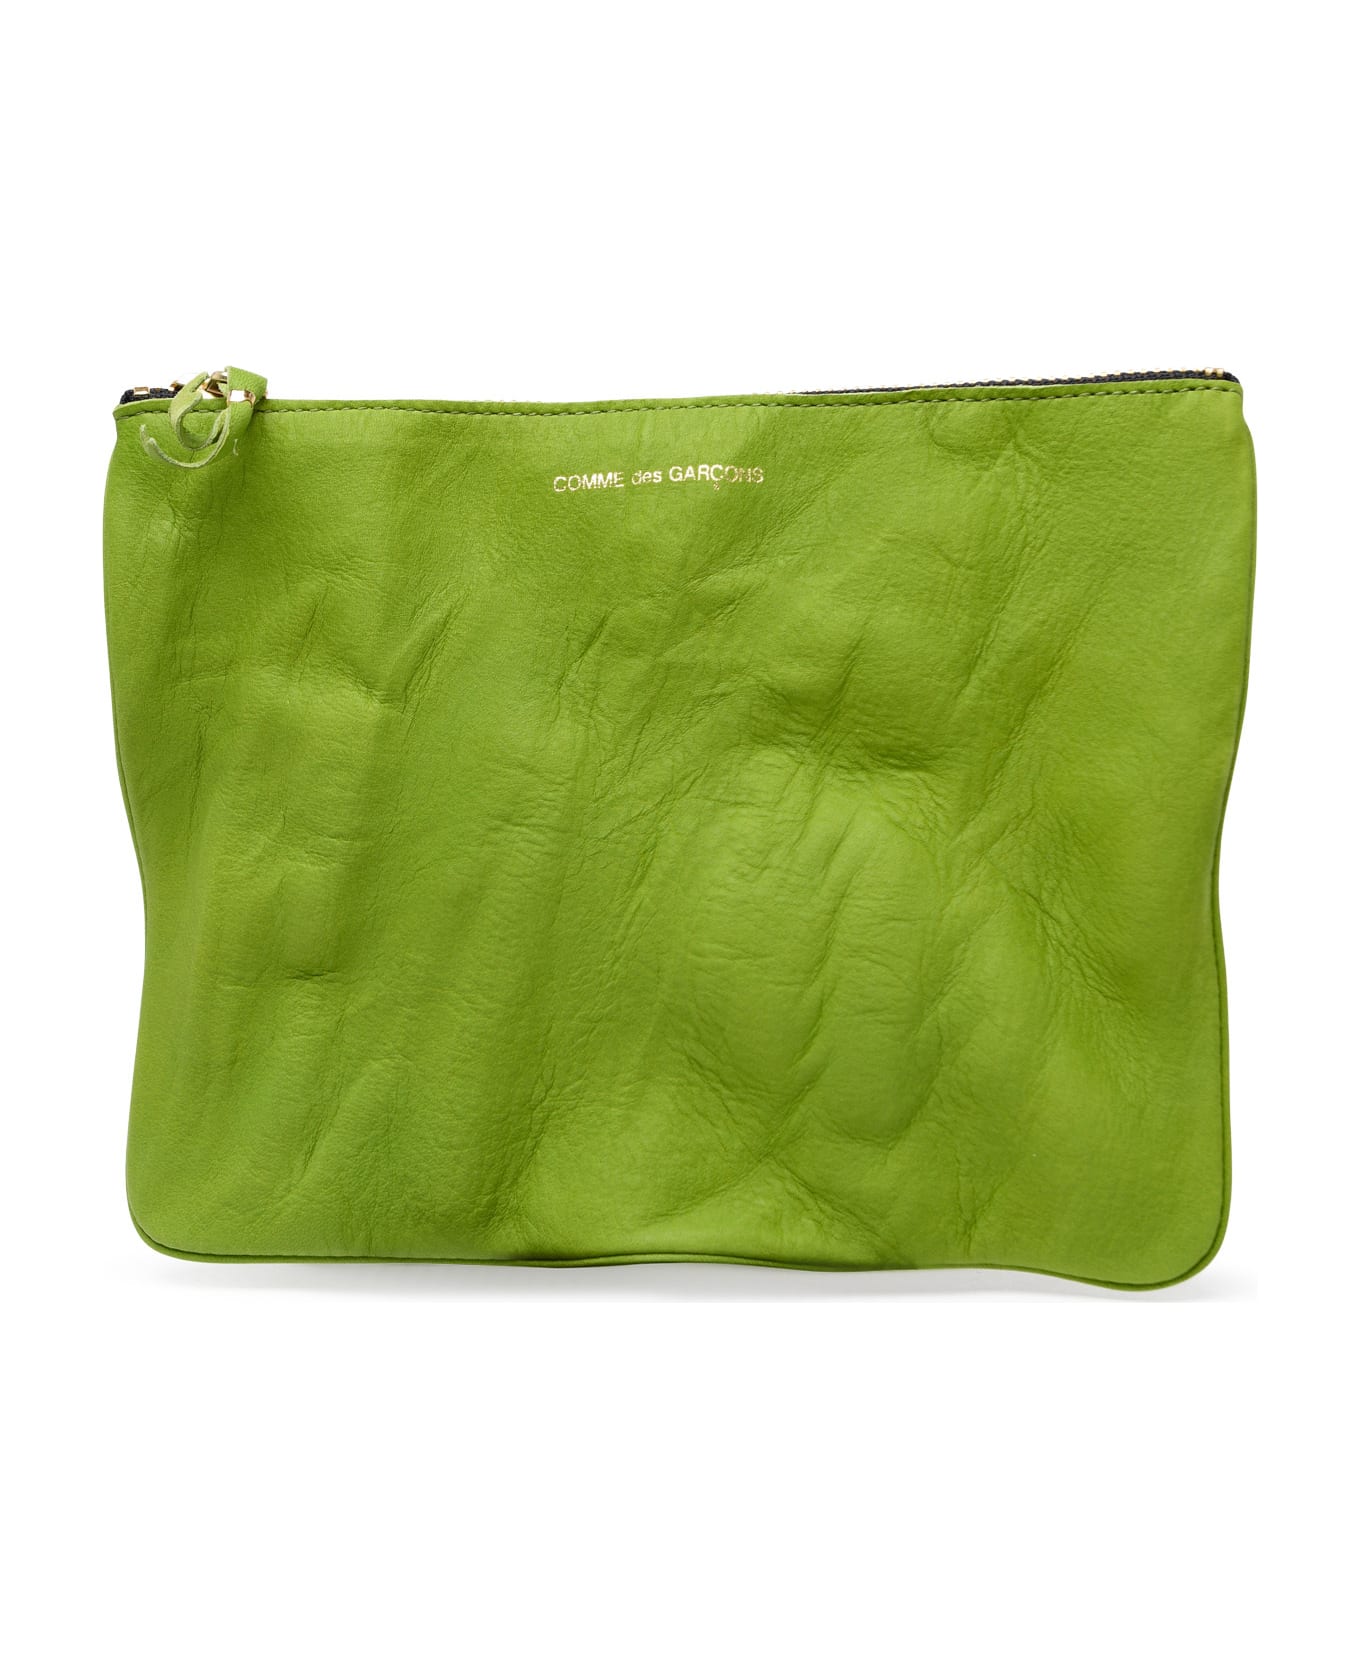 Comme des Garçons Wallet Green Leather Envelope - Green